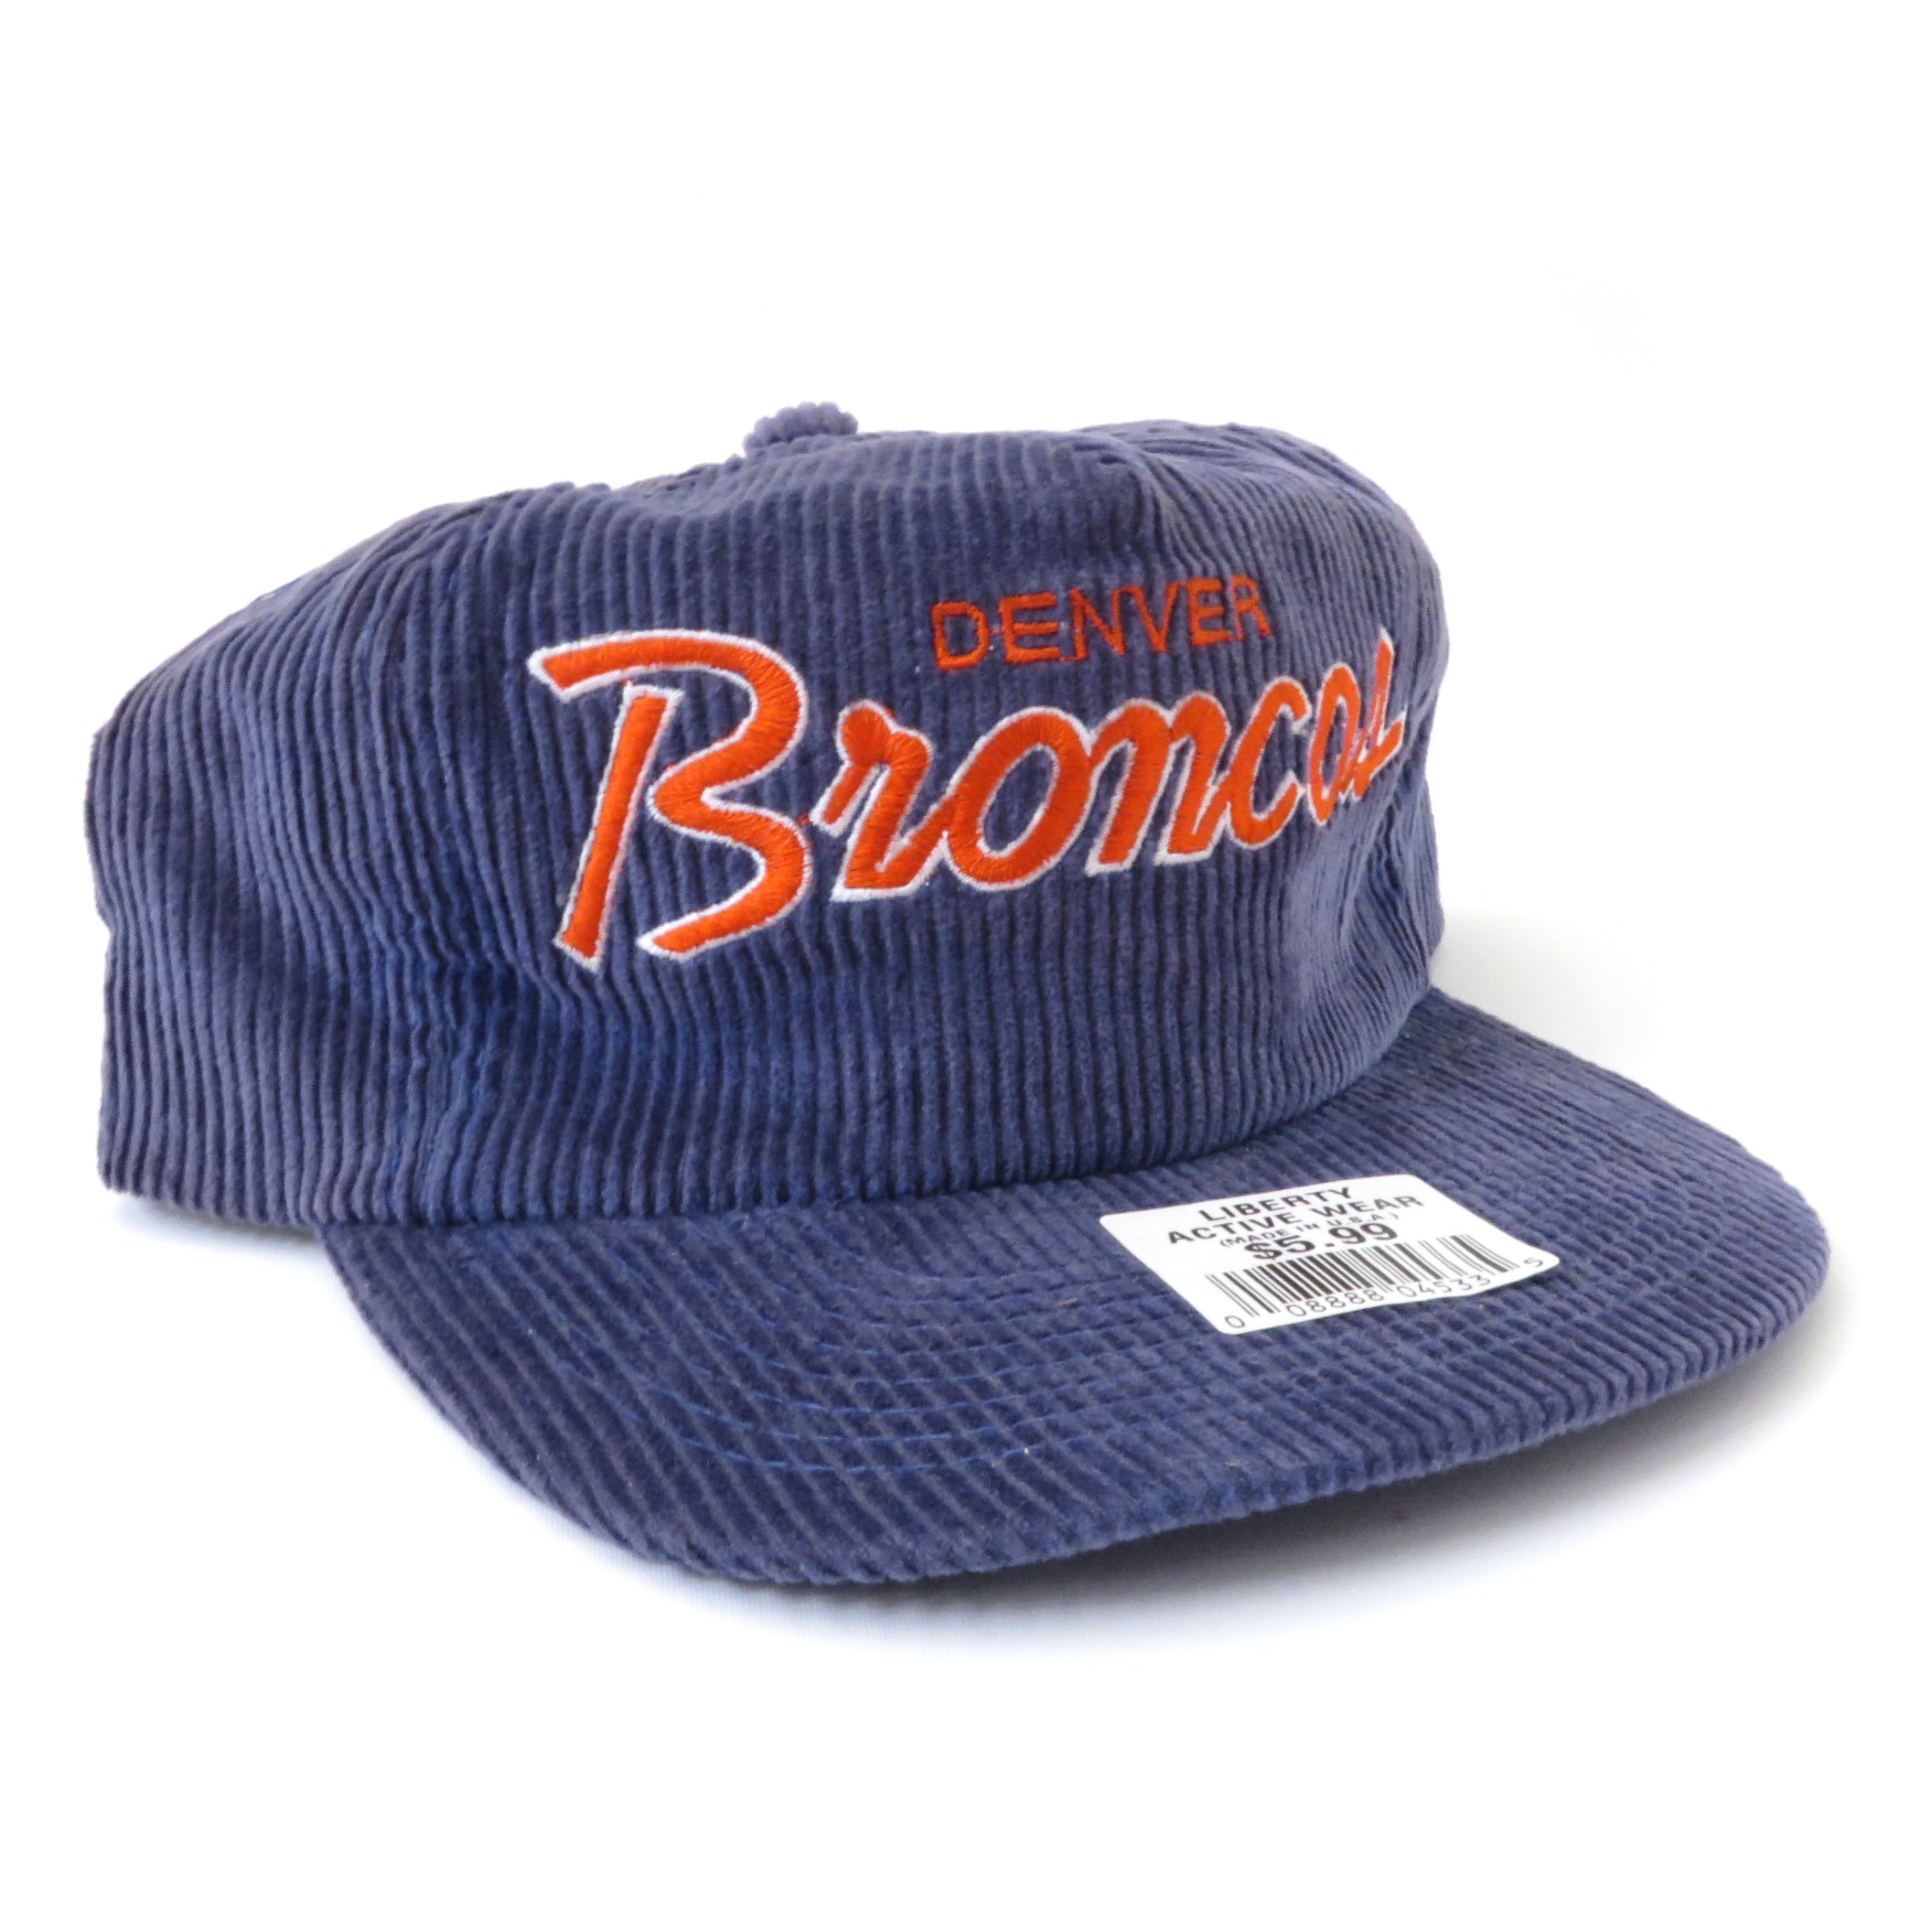 Vintage Denver Broncos Corduroy Strapback Hat